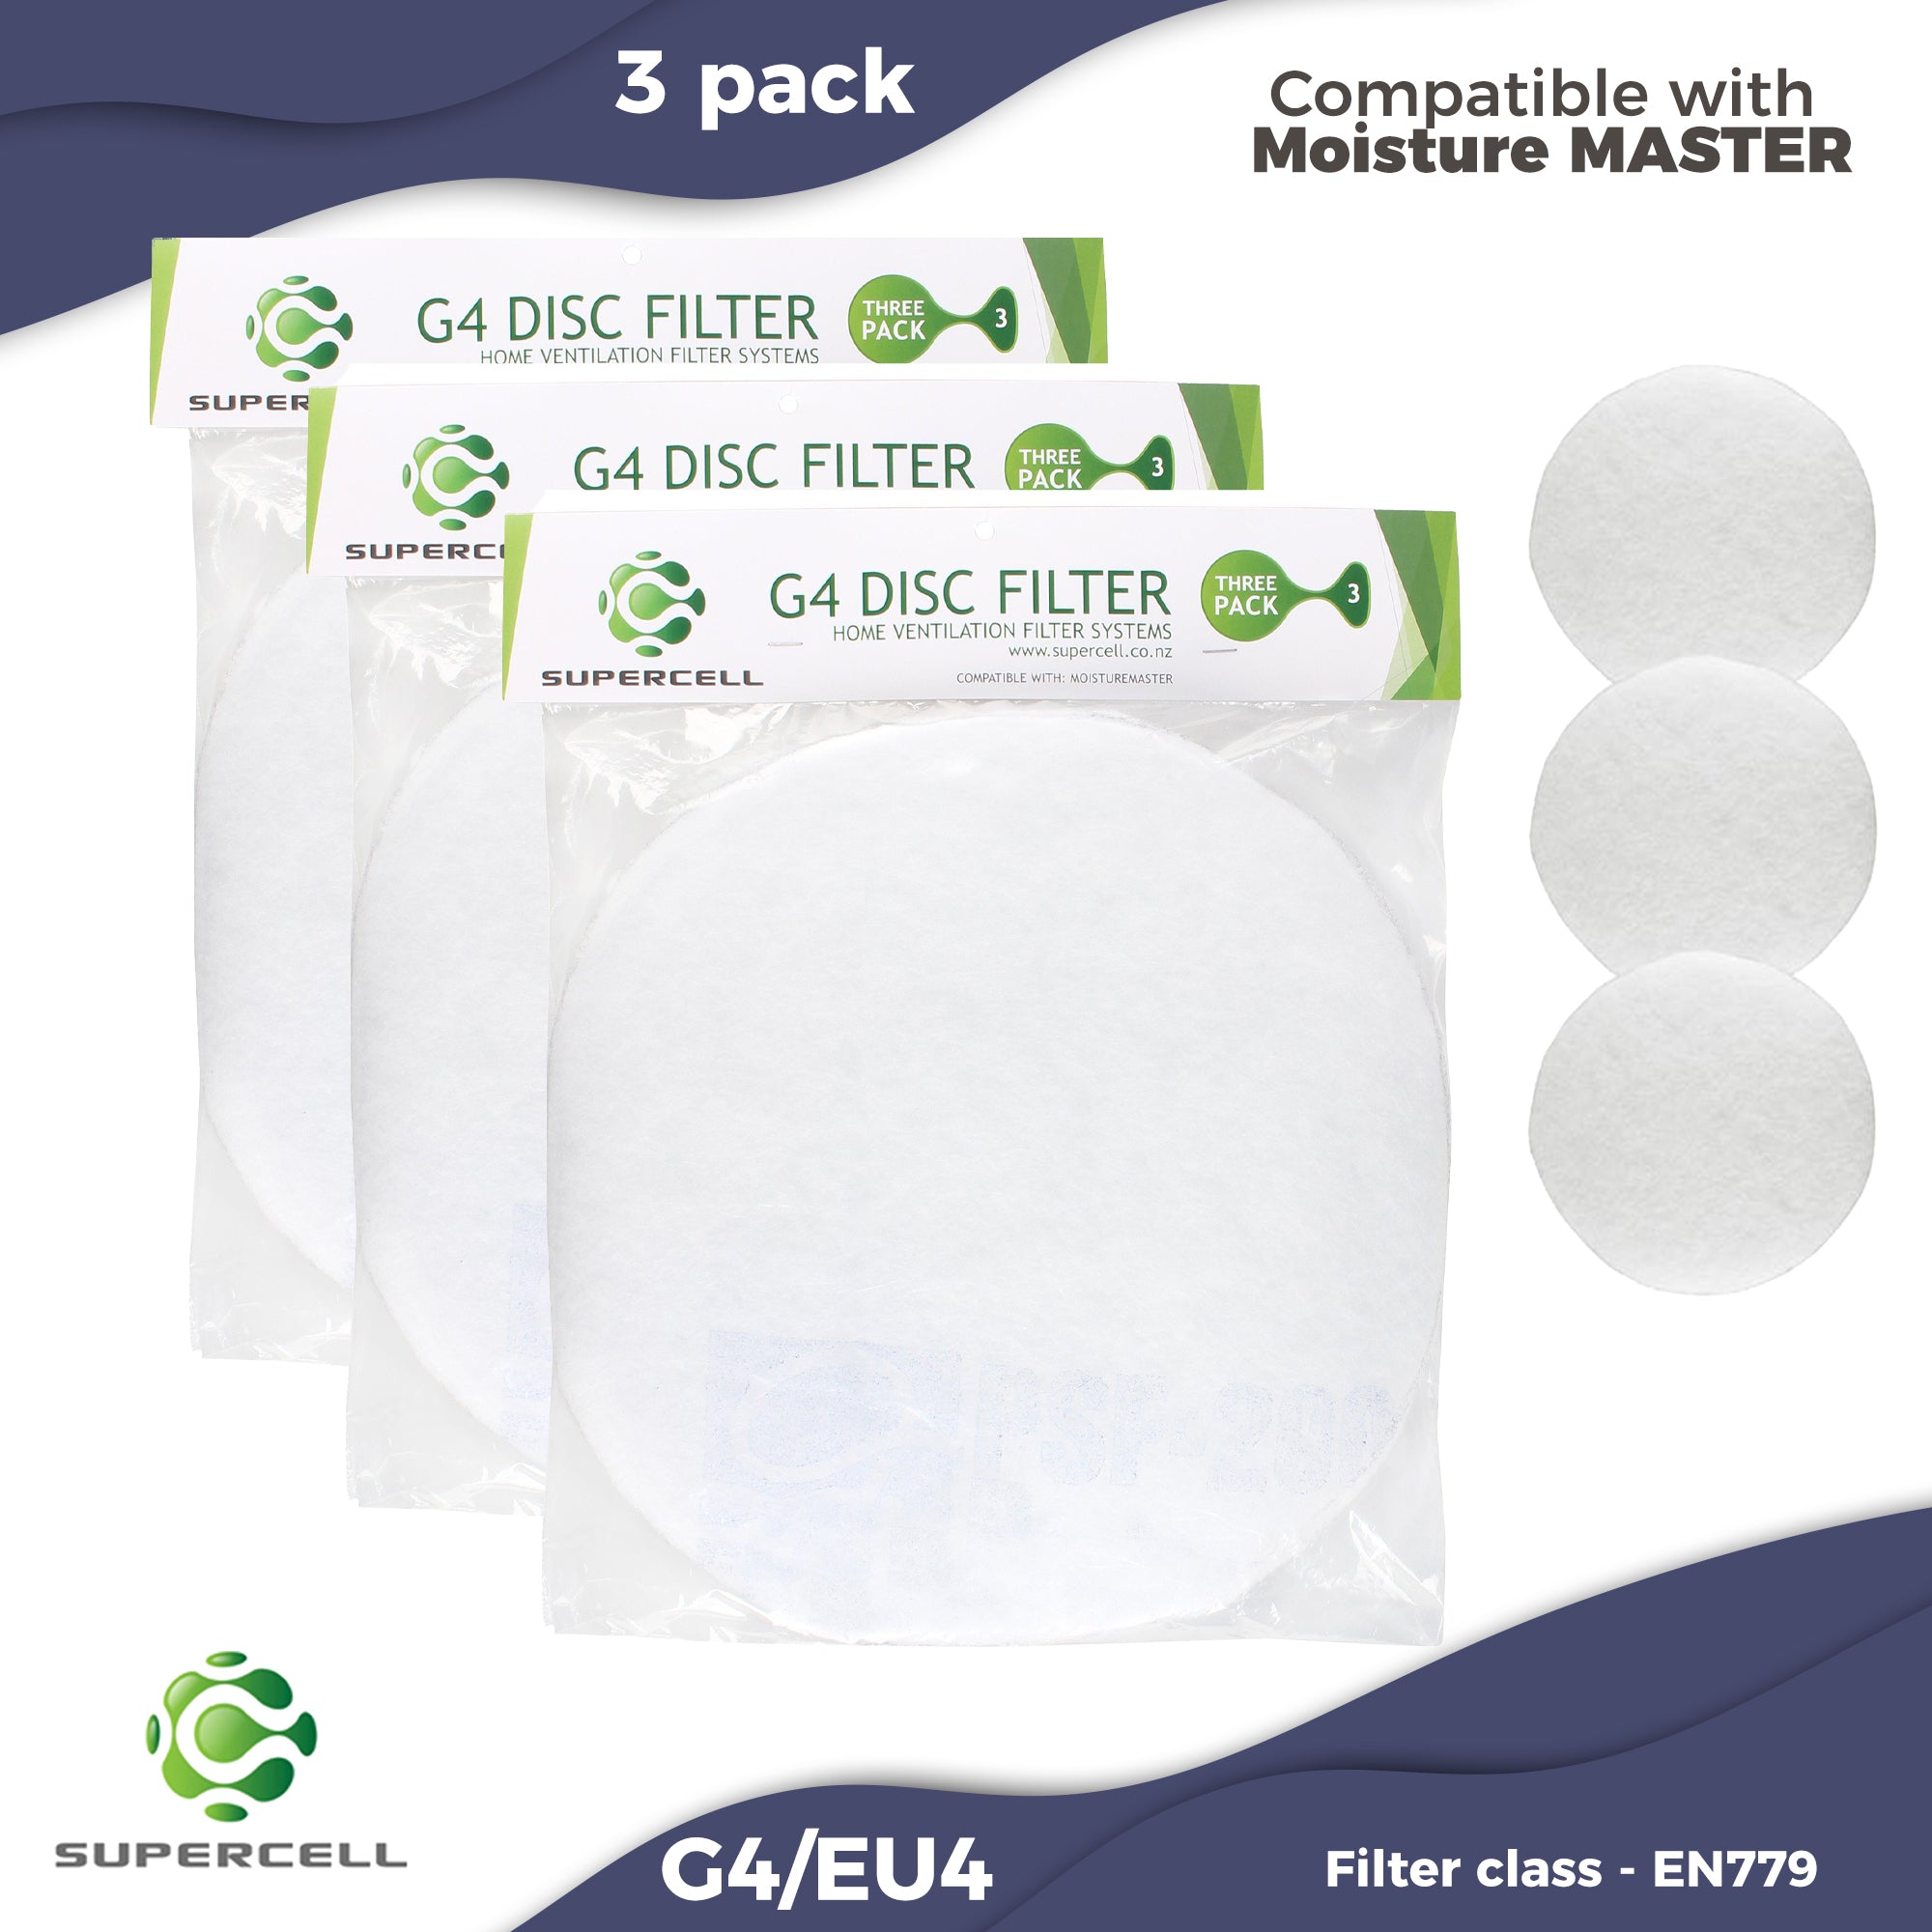 Moisture Master Compatible Supercell G4 Ventilation Filter Disc 3 pack - supercellnz